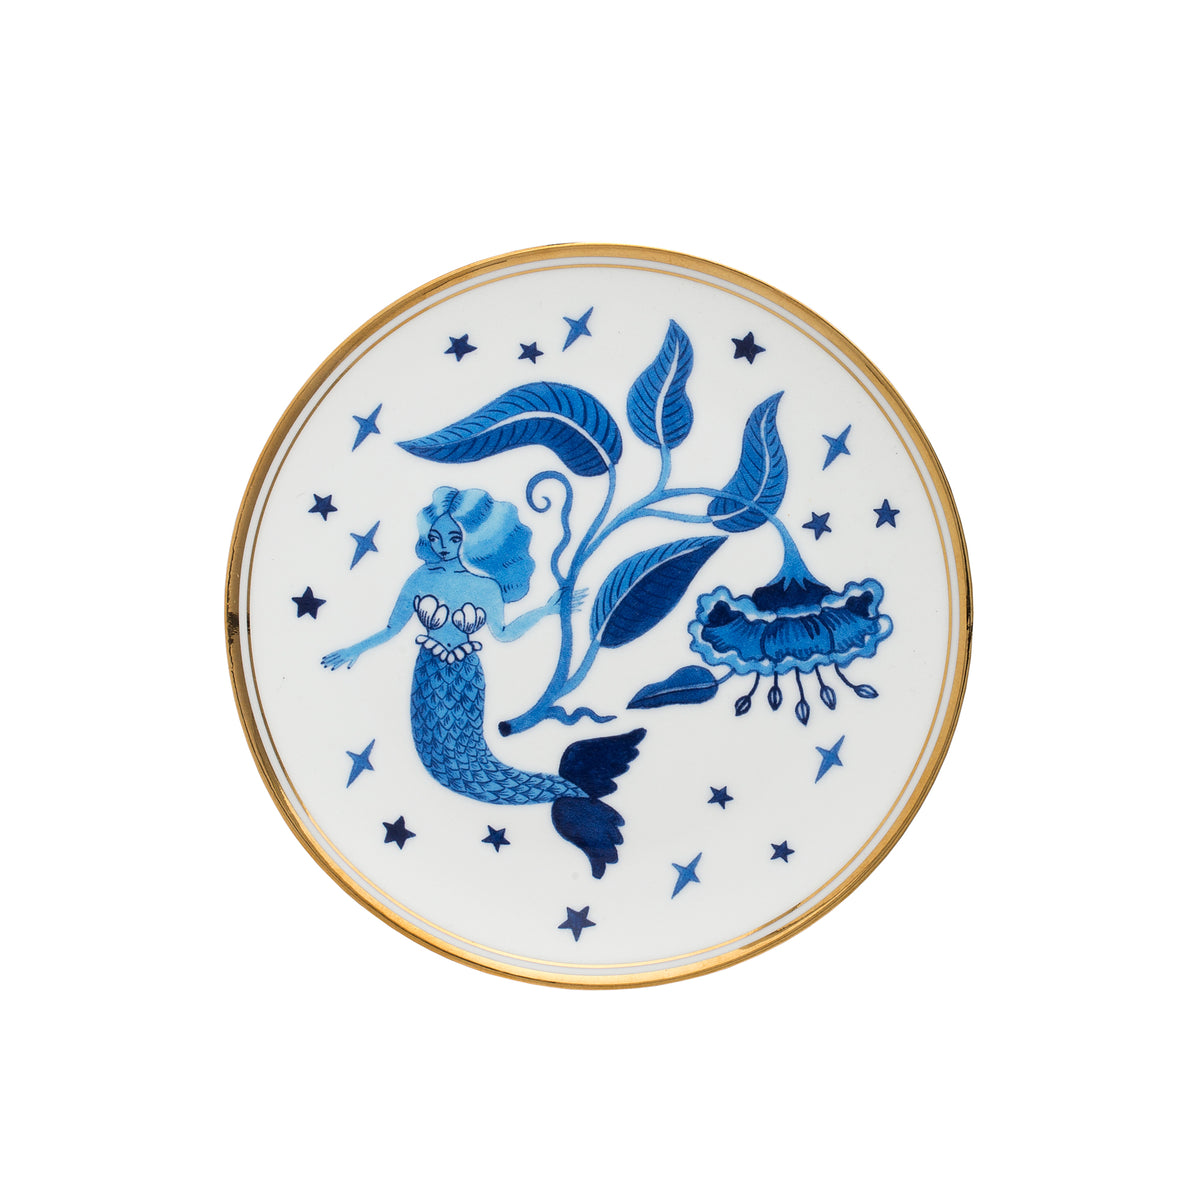 SIREN Porcelain Plate. 15 cm